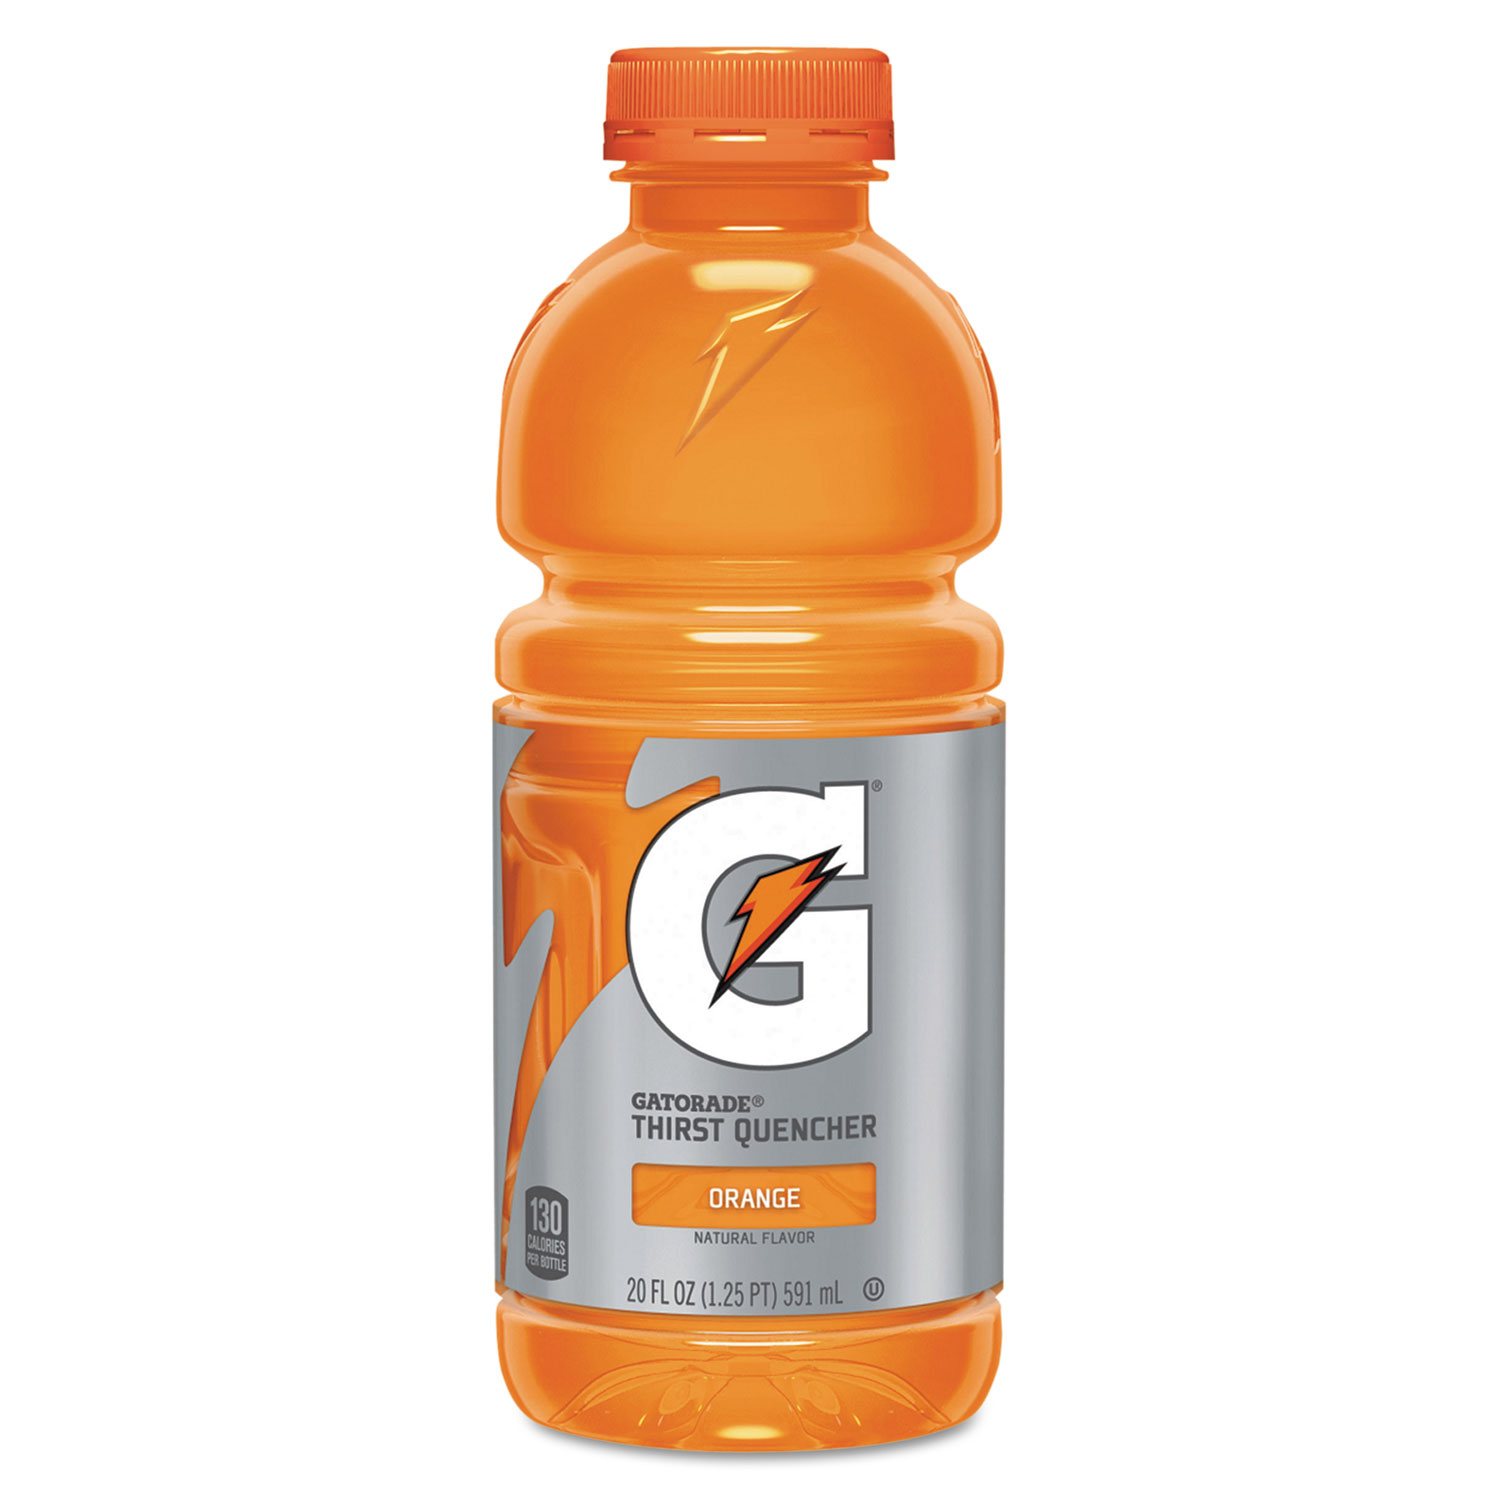 gatorade-g-series-perform-02-thirst-quencher-orange-20-oz-bottle-24